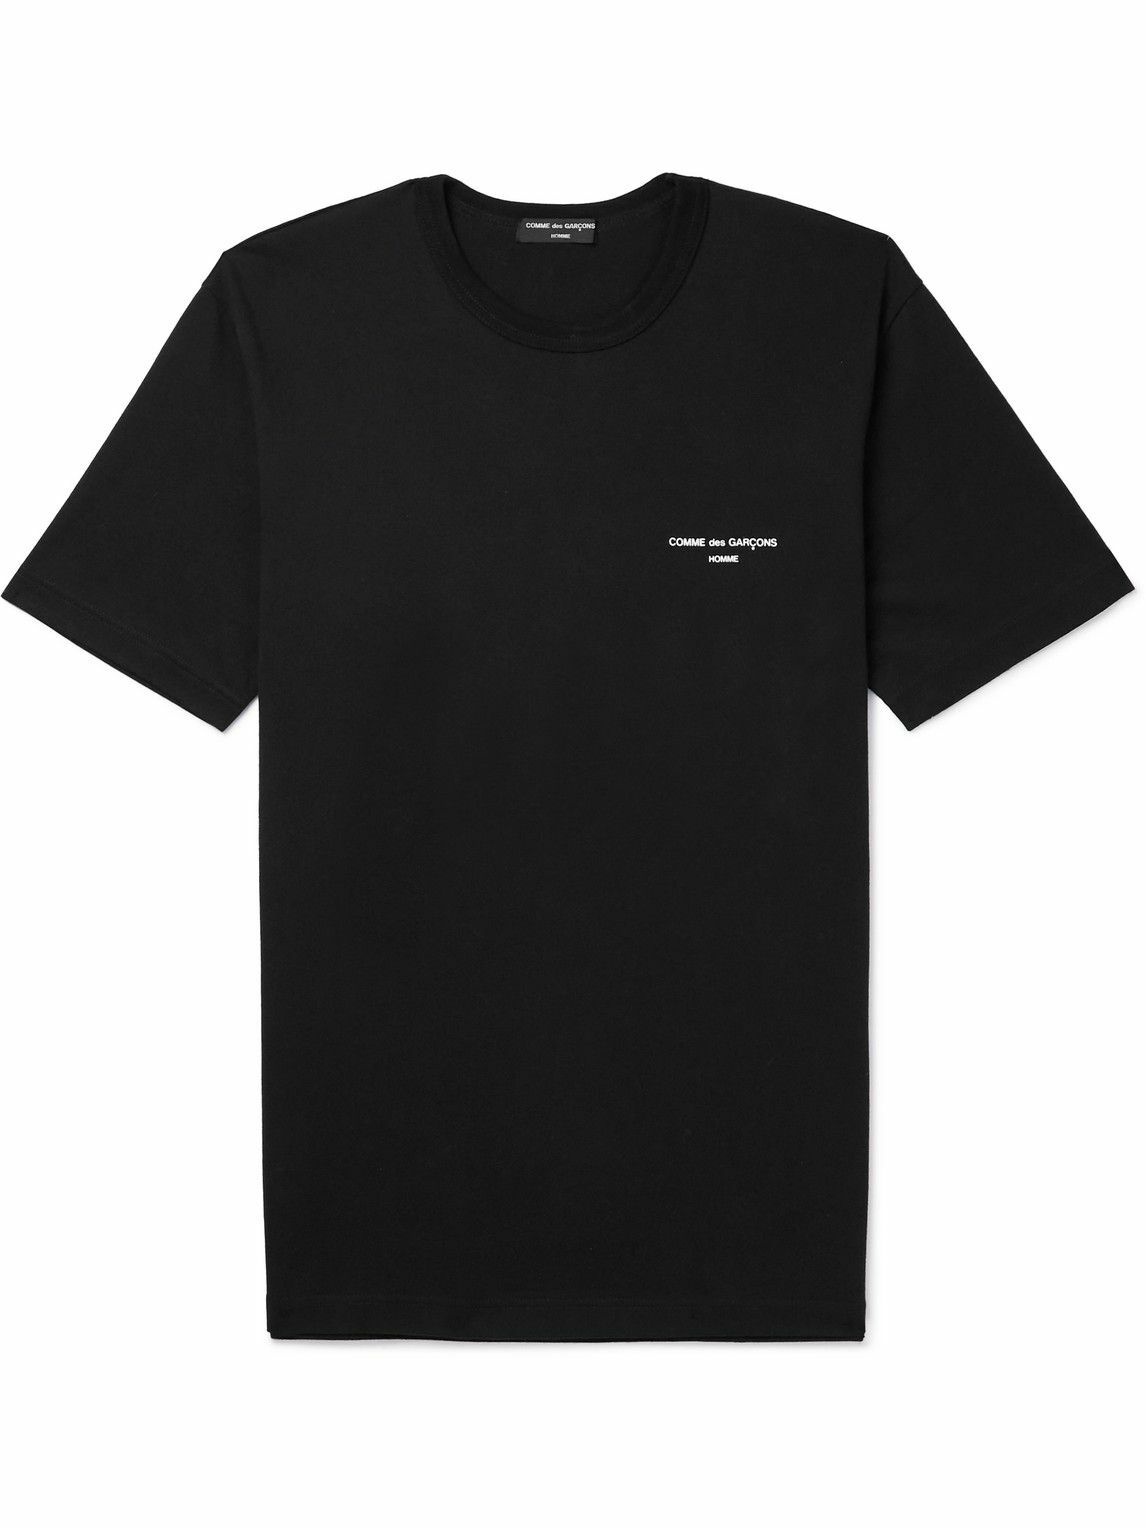 Comme des Garçons HOMME - Logo-Print Cotton-Jersey T-Shirt - Black ...